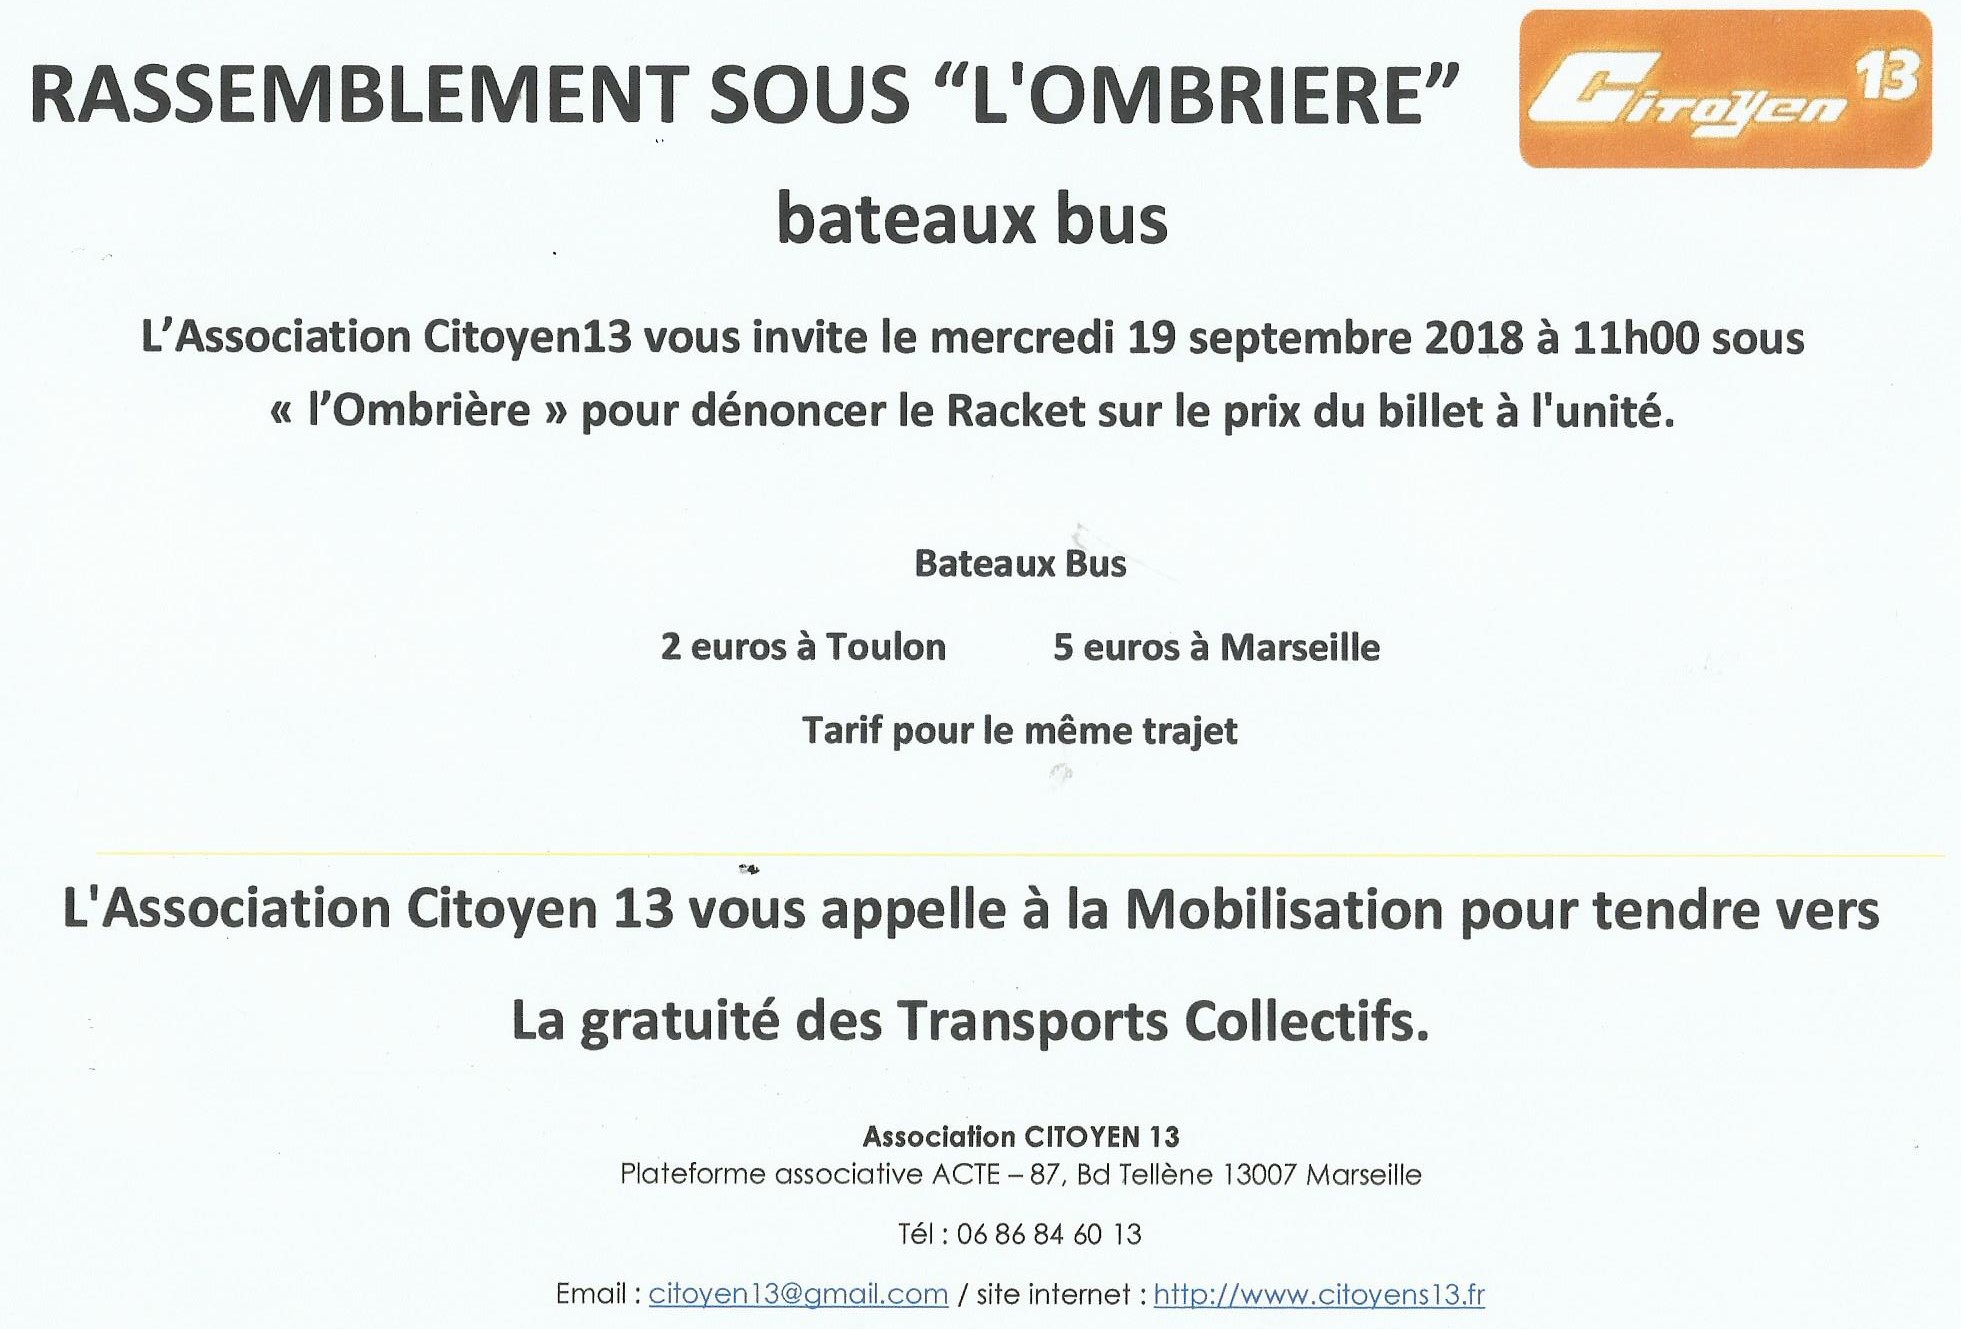 Bateaux Bus, gratuité des Transports : Rassemblement sous « l’Ombière » sur le Vieux Port  mercredi 19 septembre à 11h00